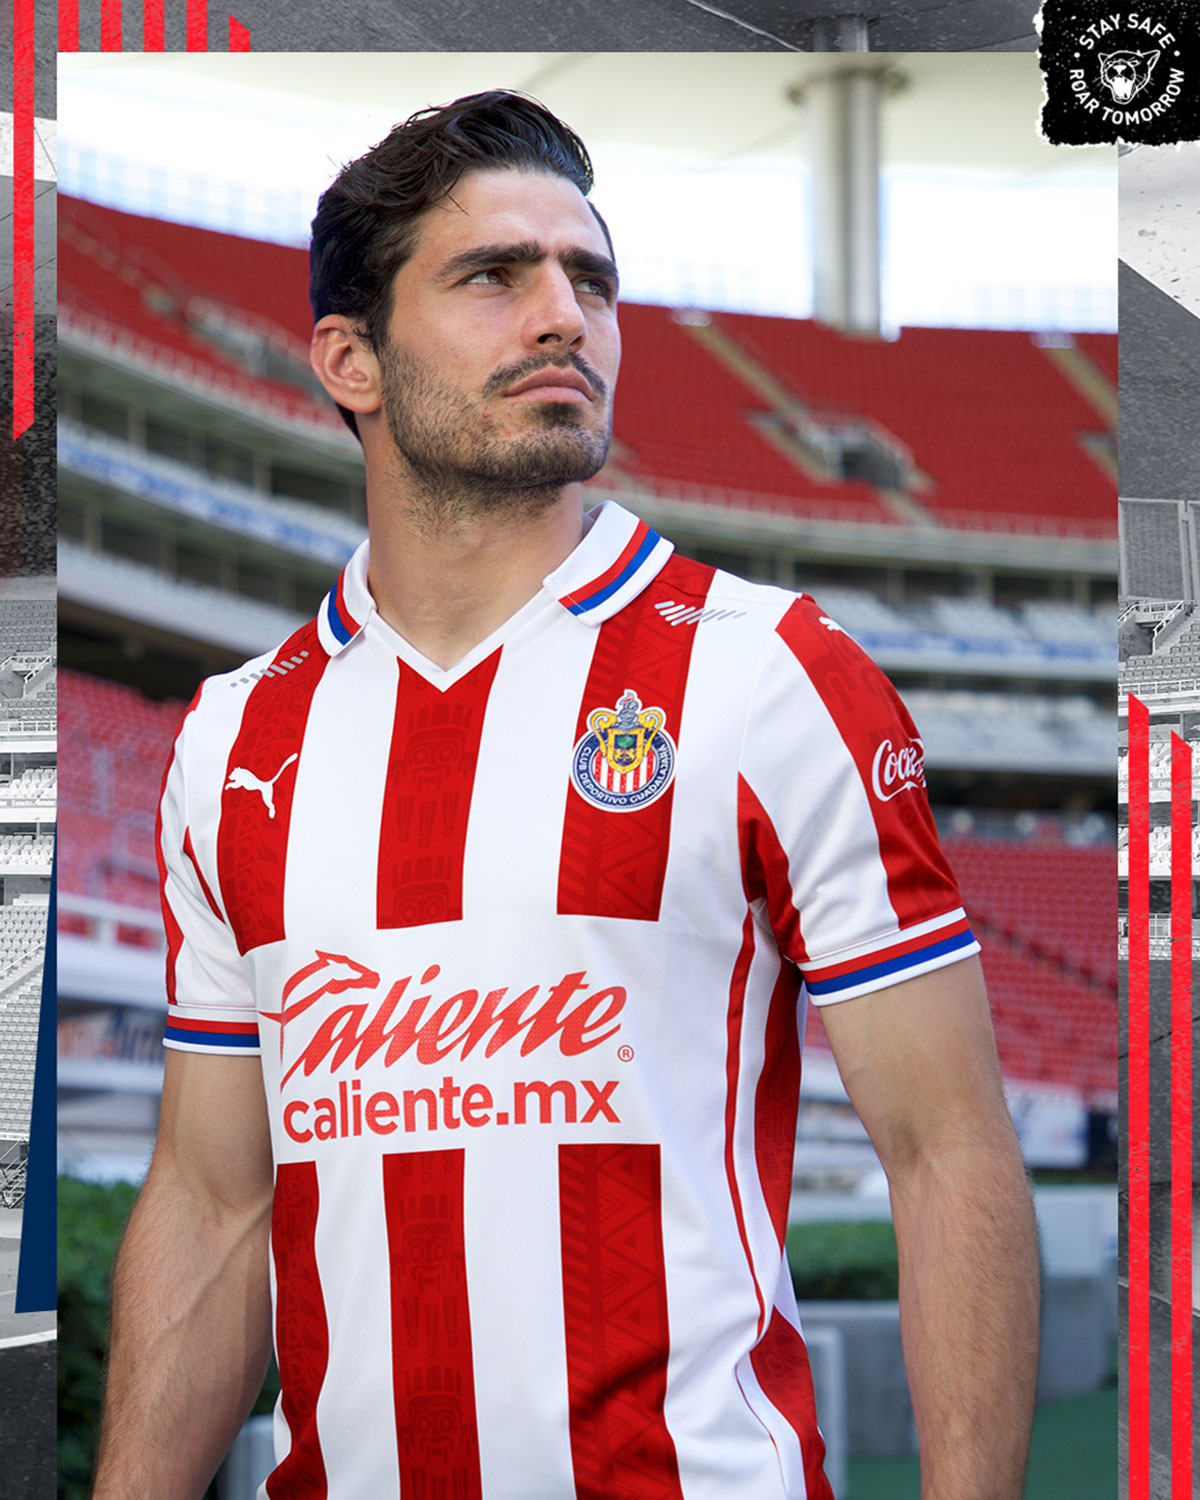 Totalmente oficial: Chivas presentó sus uniformes para el Apertura 2020